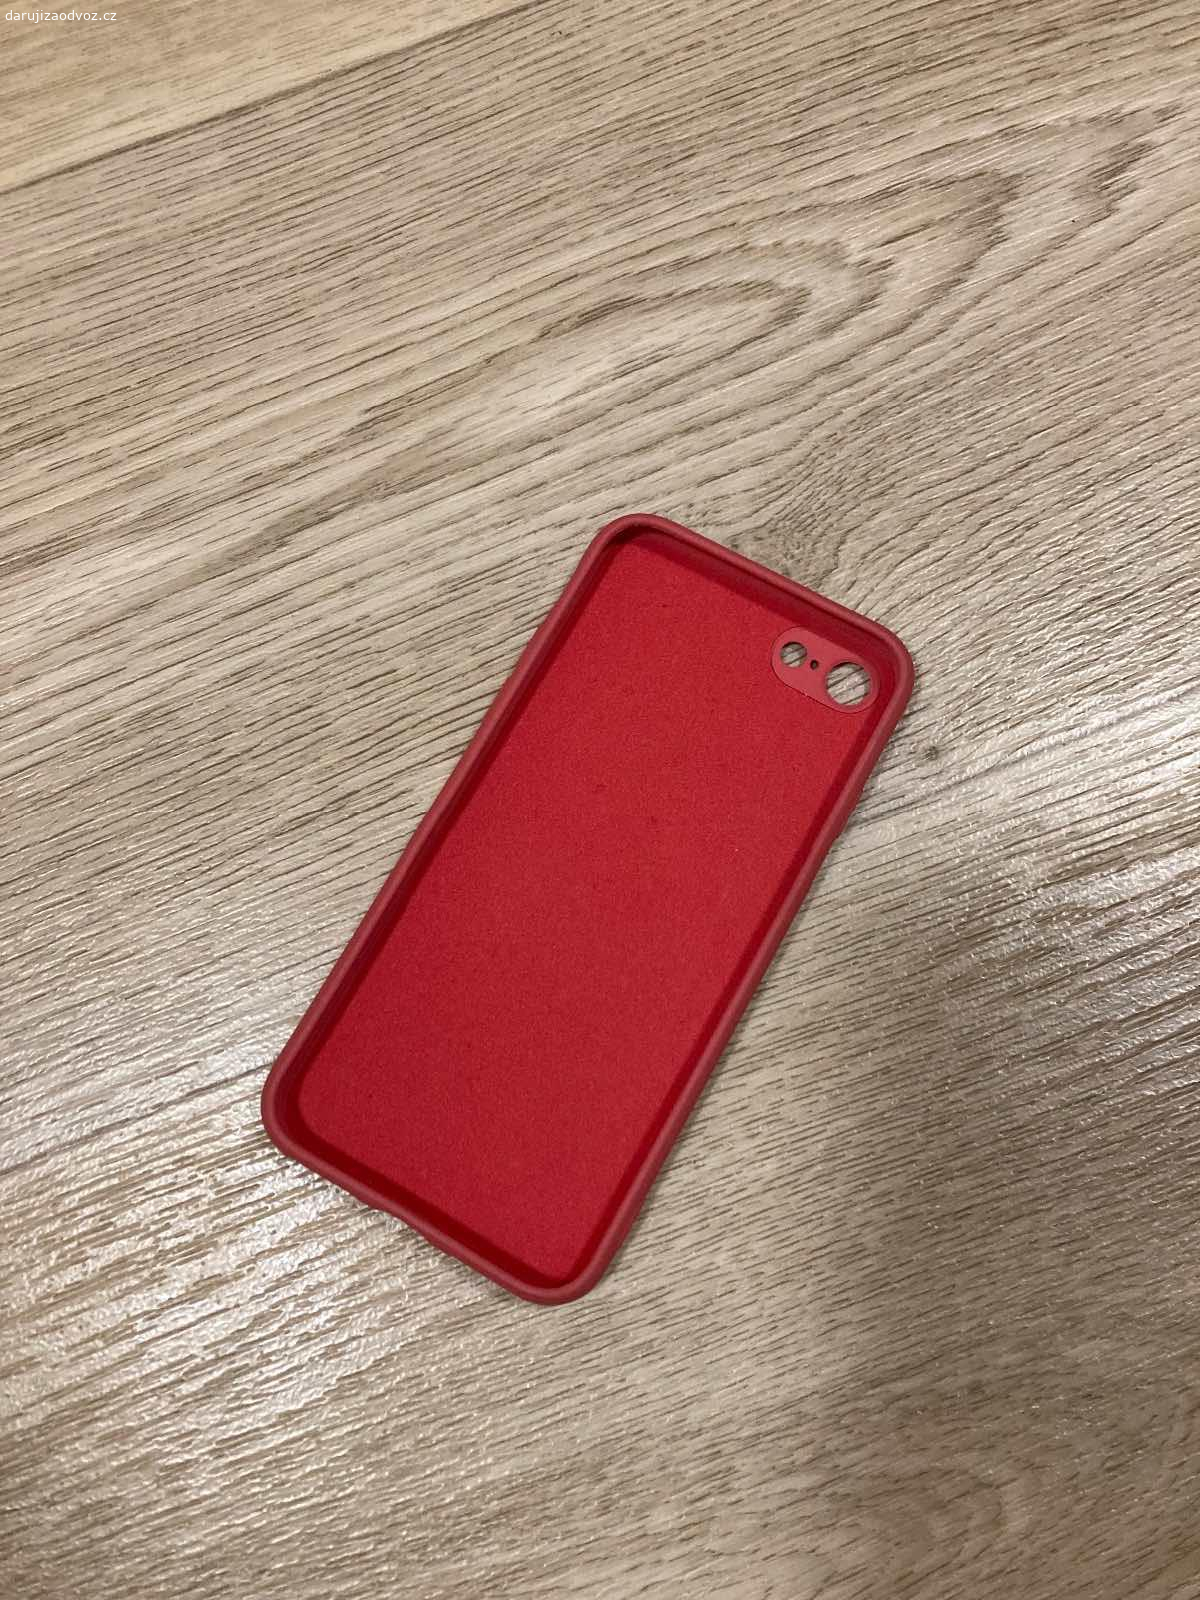 Obal na iPhone SE2020/6/7. Daruji červený obal na iPhone typu 6/7/SE2020. Minimálně používaný.